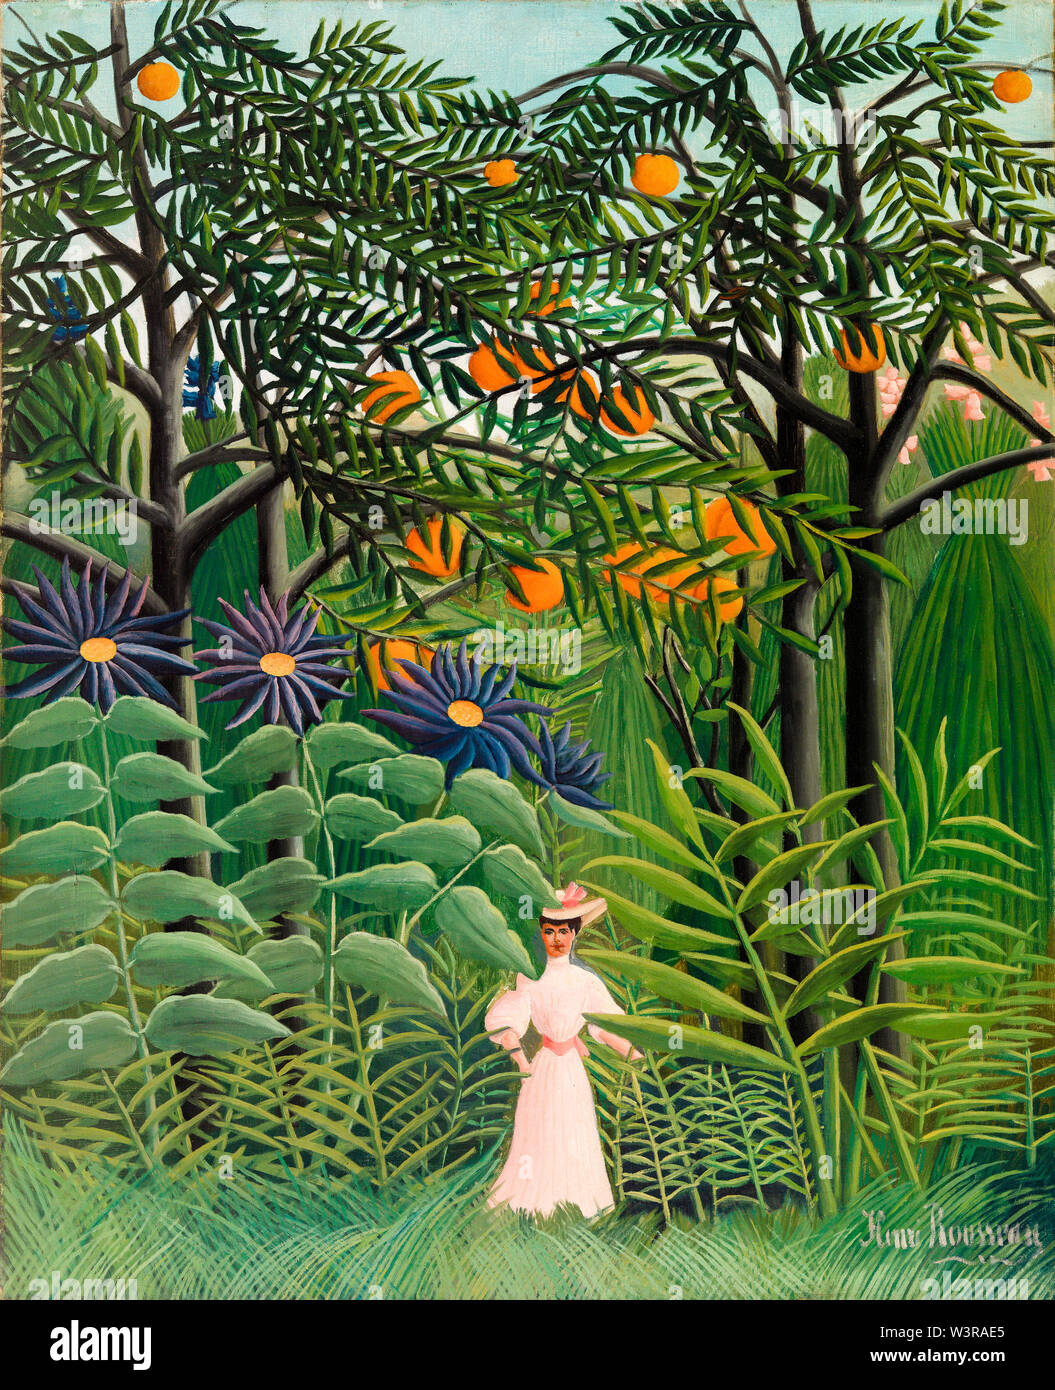 Henri Rousseau, femme marchant dans une forêt exotique, peinture d'art primitif, 1905 Banque D'Images